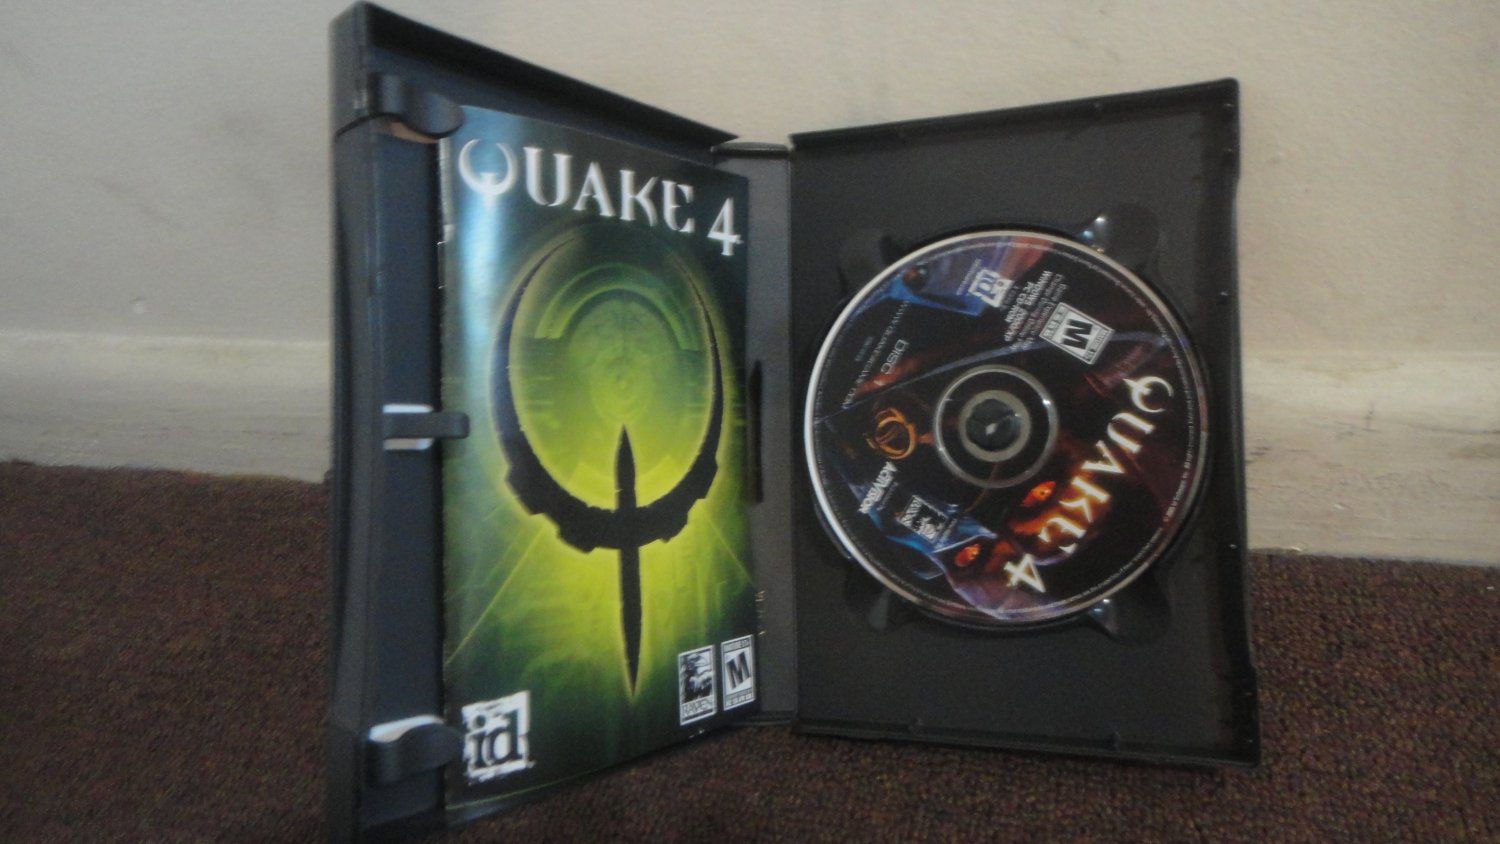 quake 4 pc game cd key